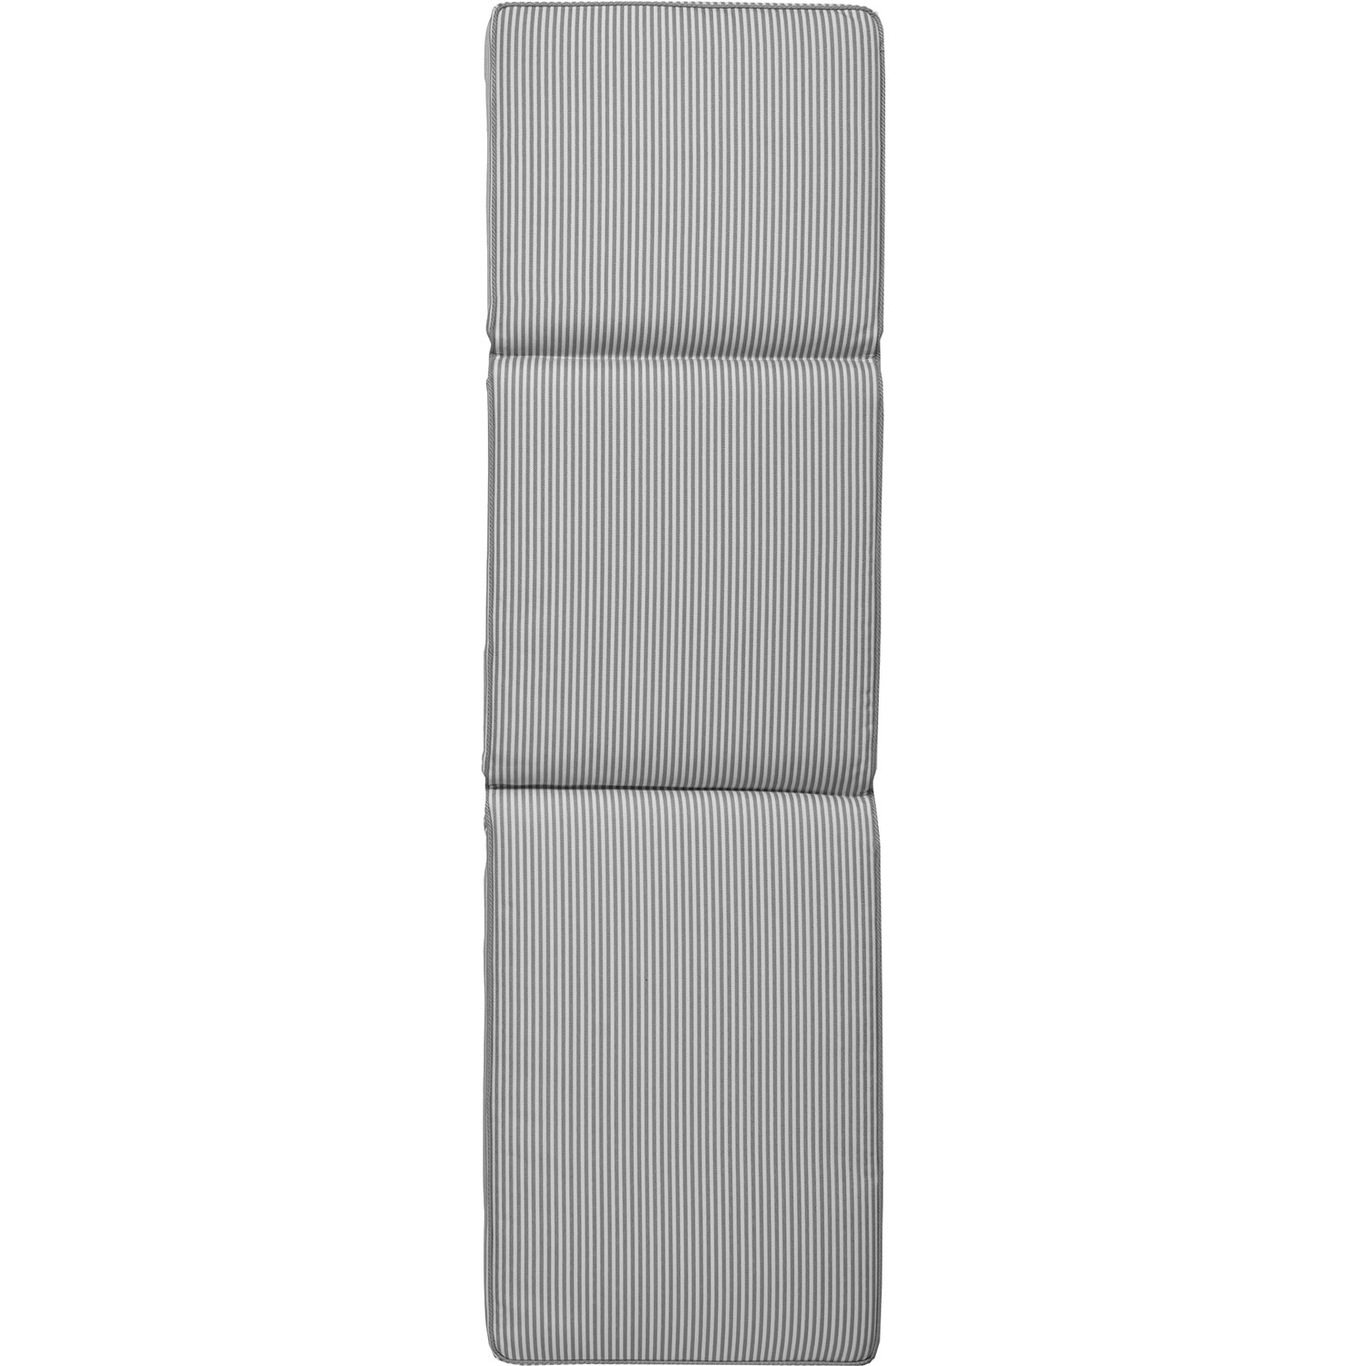 Narrow Stripe Sunbed Cushion 50x186 cm, Grey